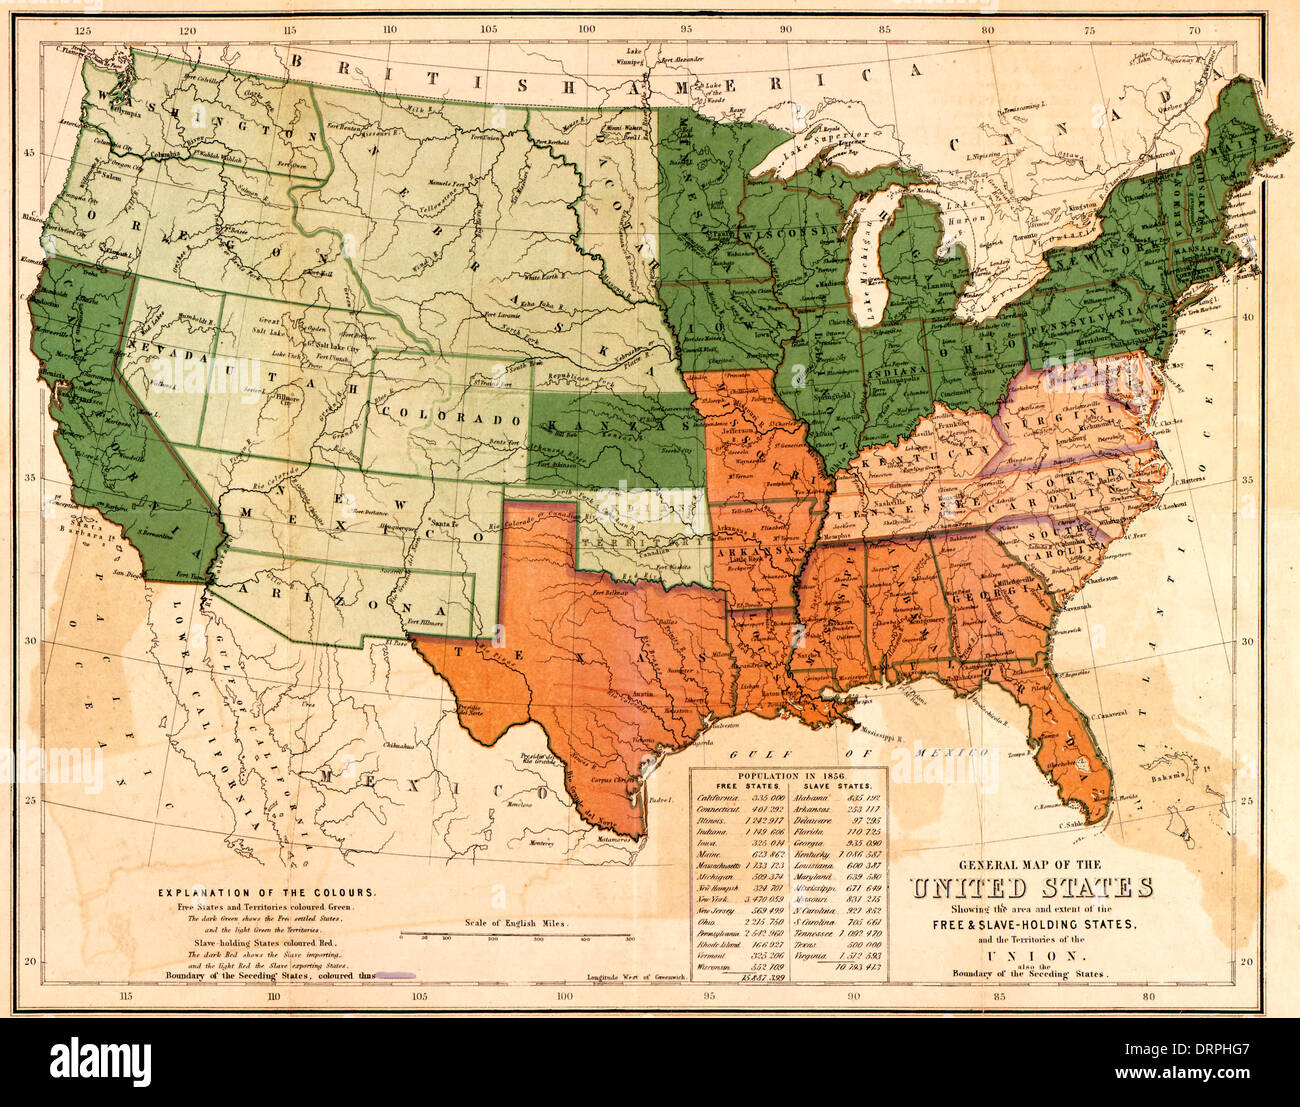 Übersichtskarte der Vereinigten Staaten, Bereich und Umfang der freien & sklavenhaltenden Staaten und Territorien der Union zeigt: auch die Begrenzung der seceding Staaten 1861 Stockfoto